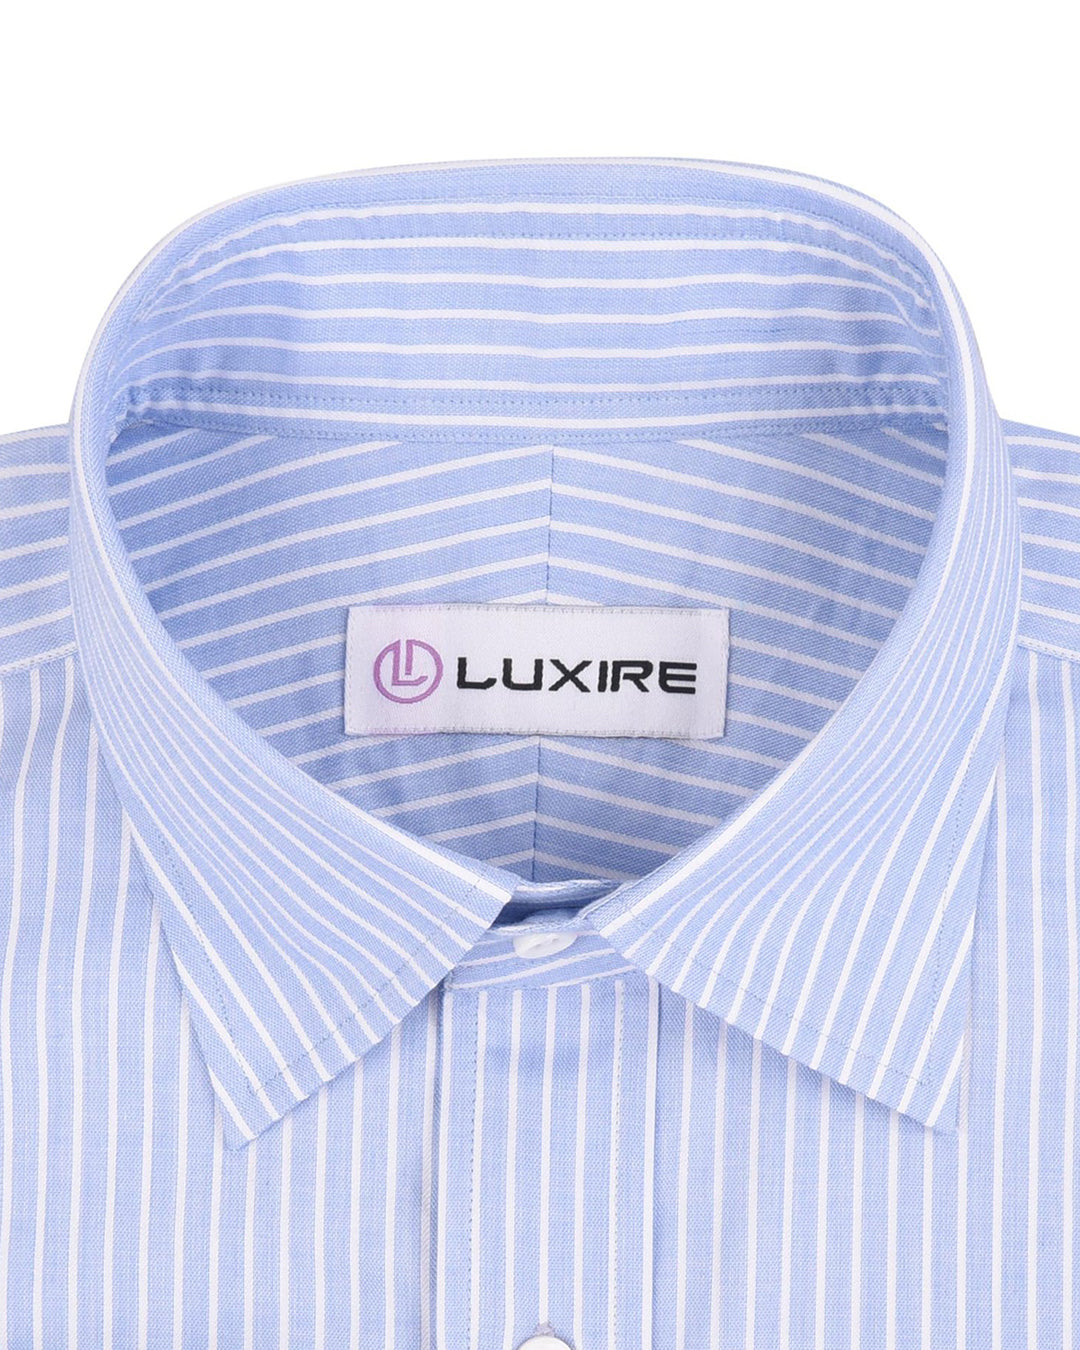 Luxire Presto: Monti White on Blue Stripes